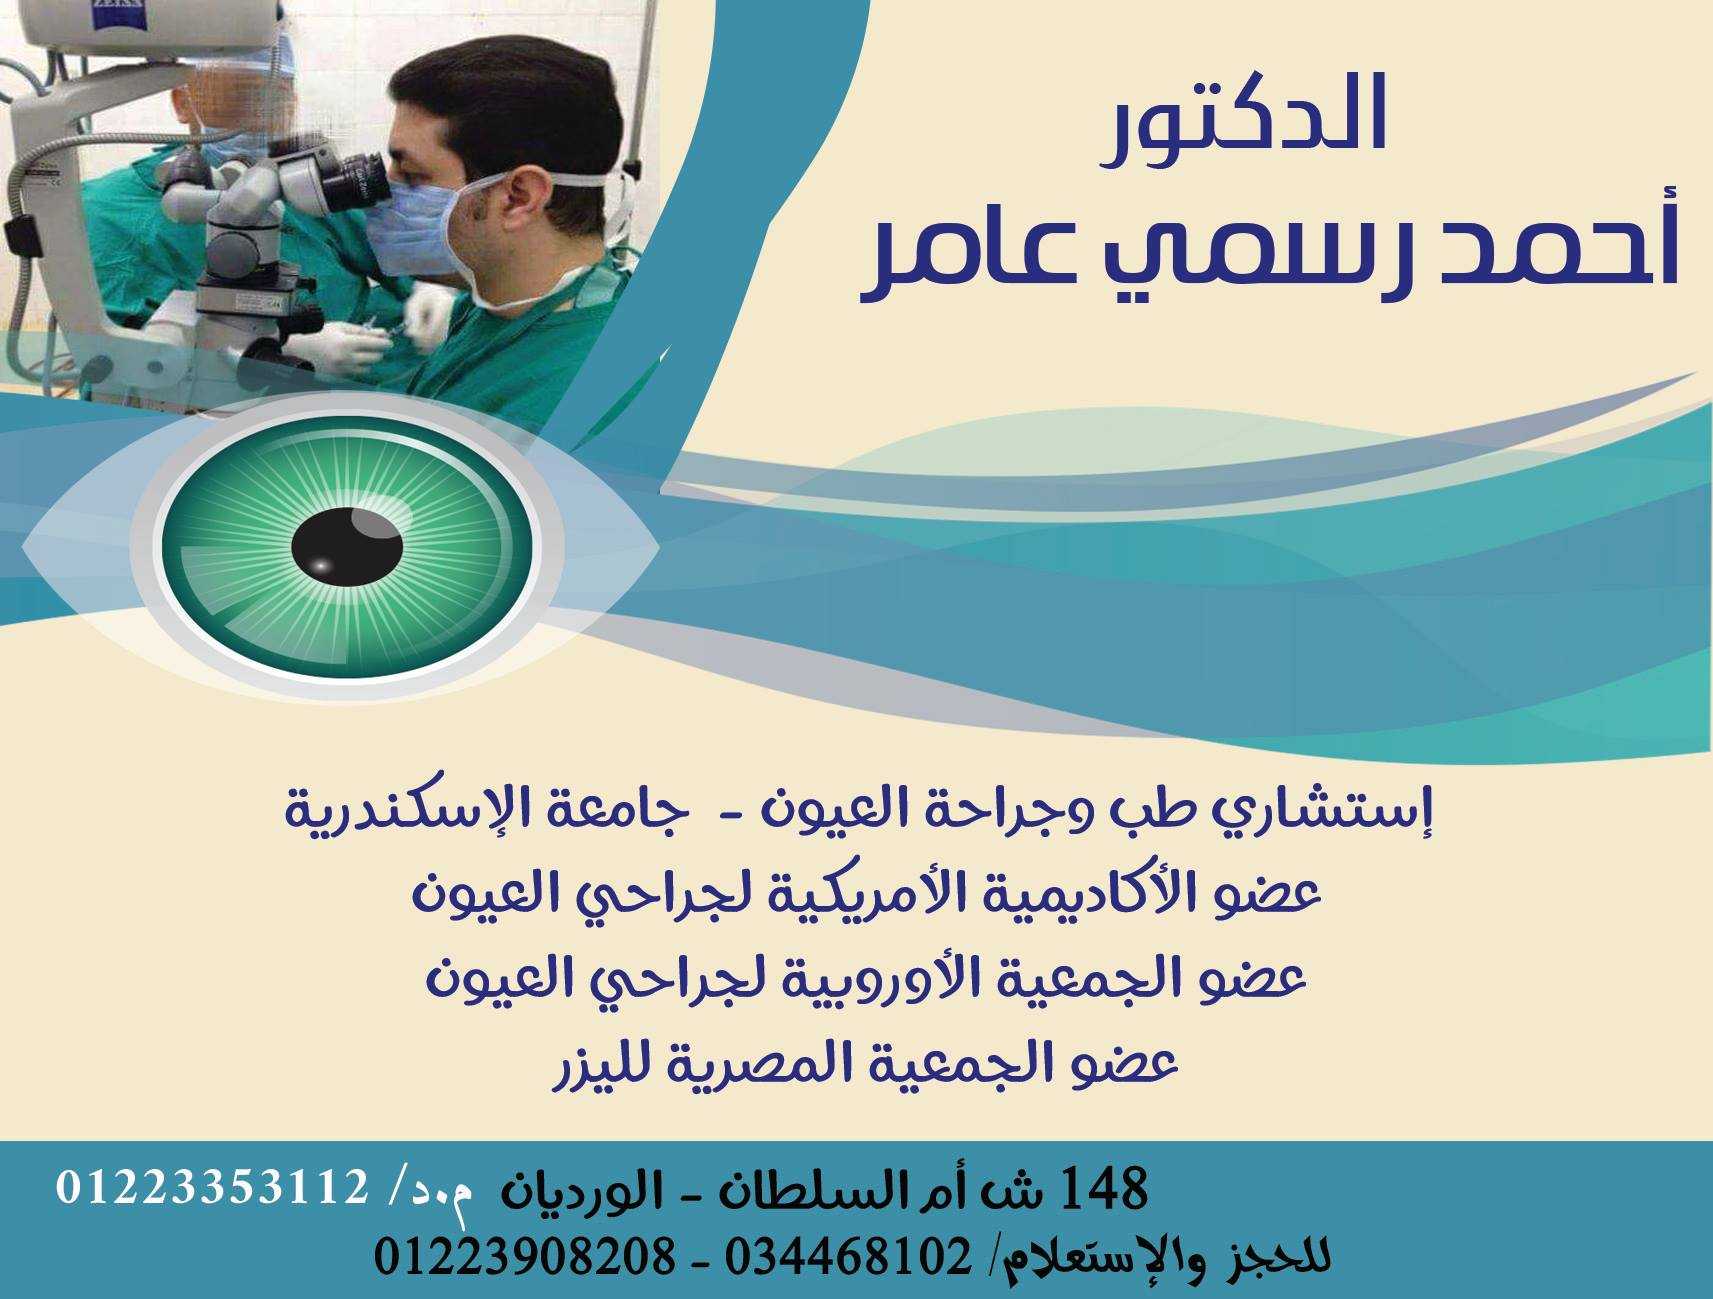 د/ أحمد رسمي عامر ..... إستشارى طب وجراحة العيون